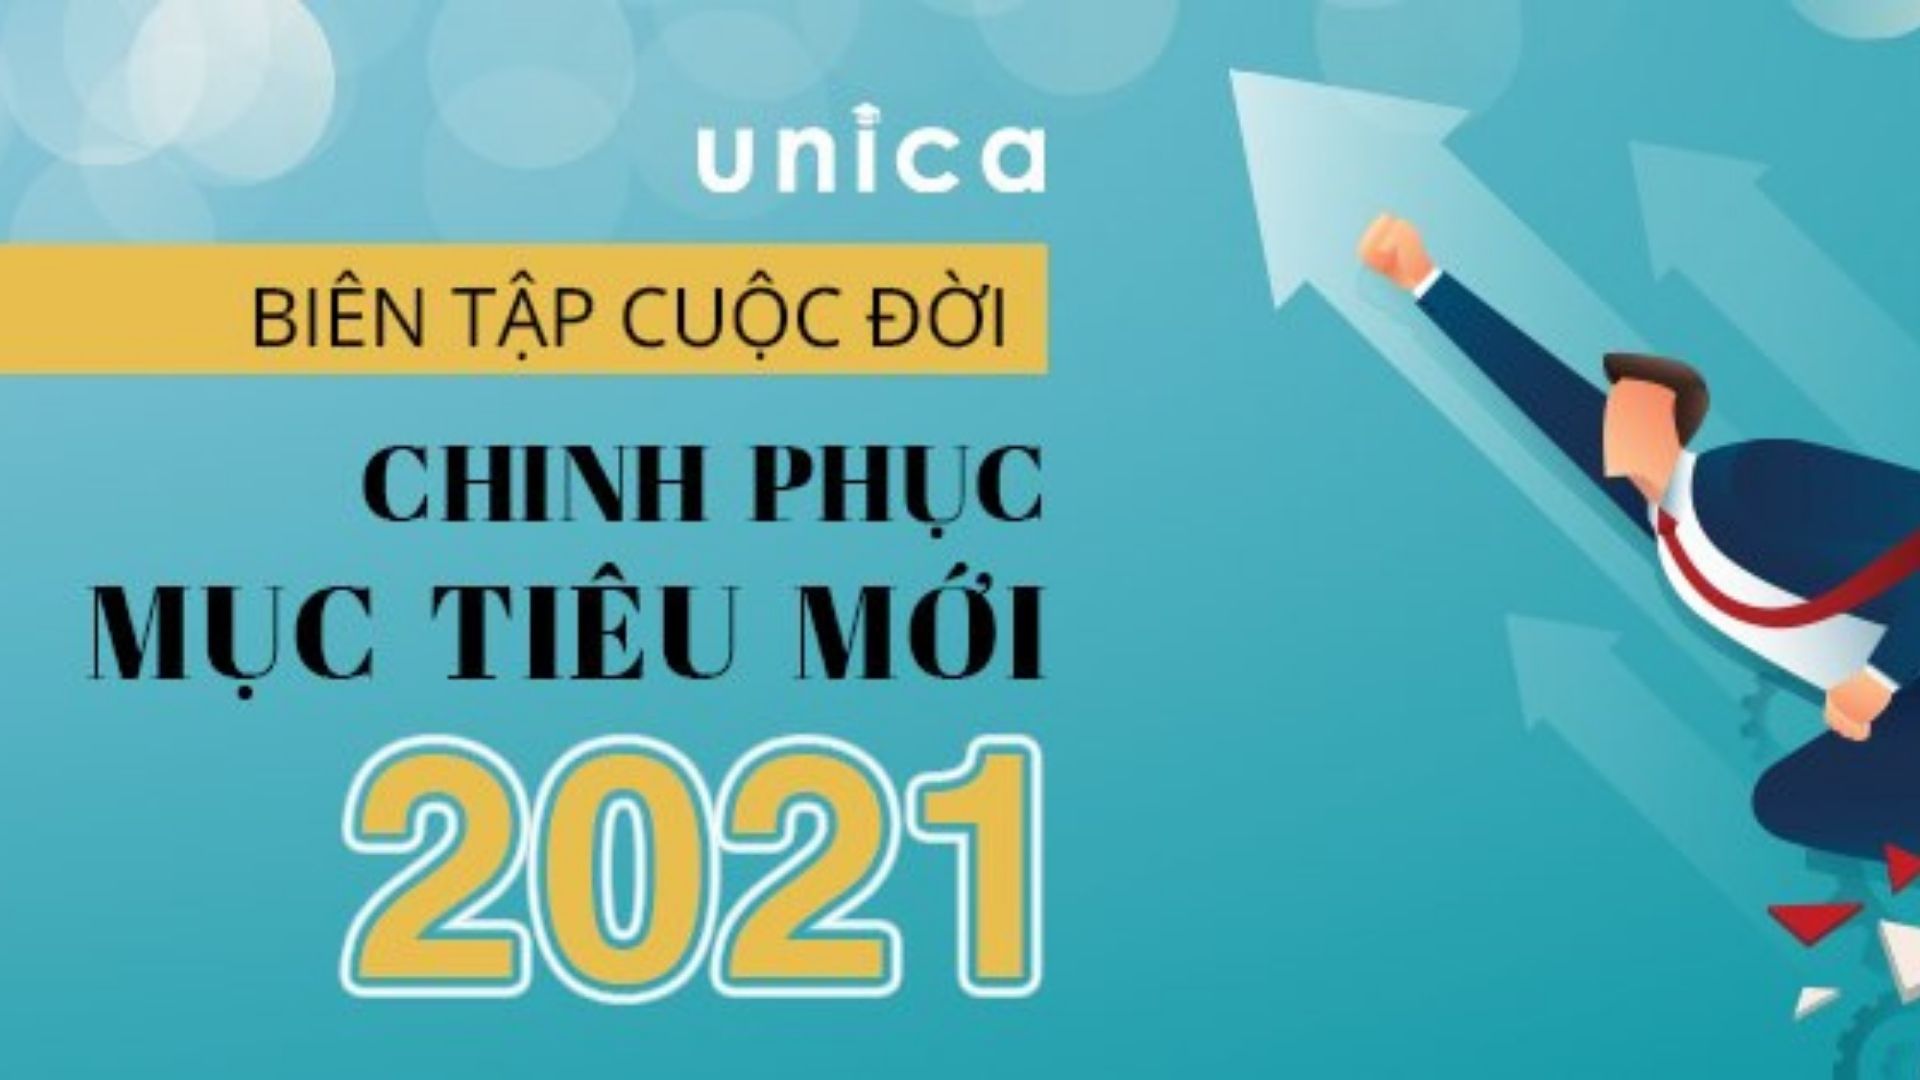 [TQ} Tặng 01 khóa học 01 tháng bất kỳ tại Unica.vn